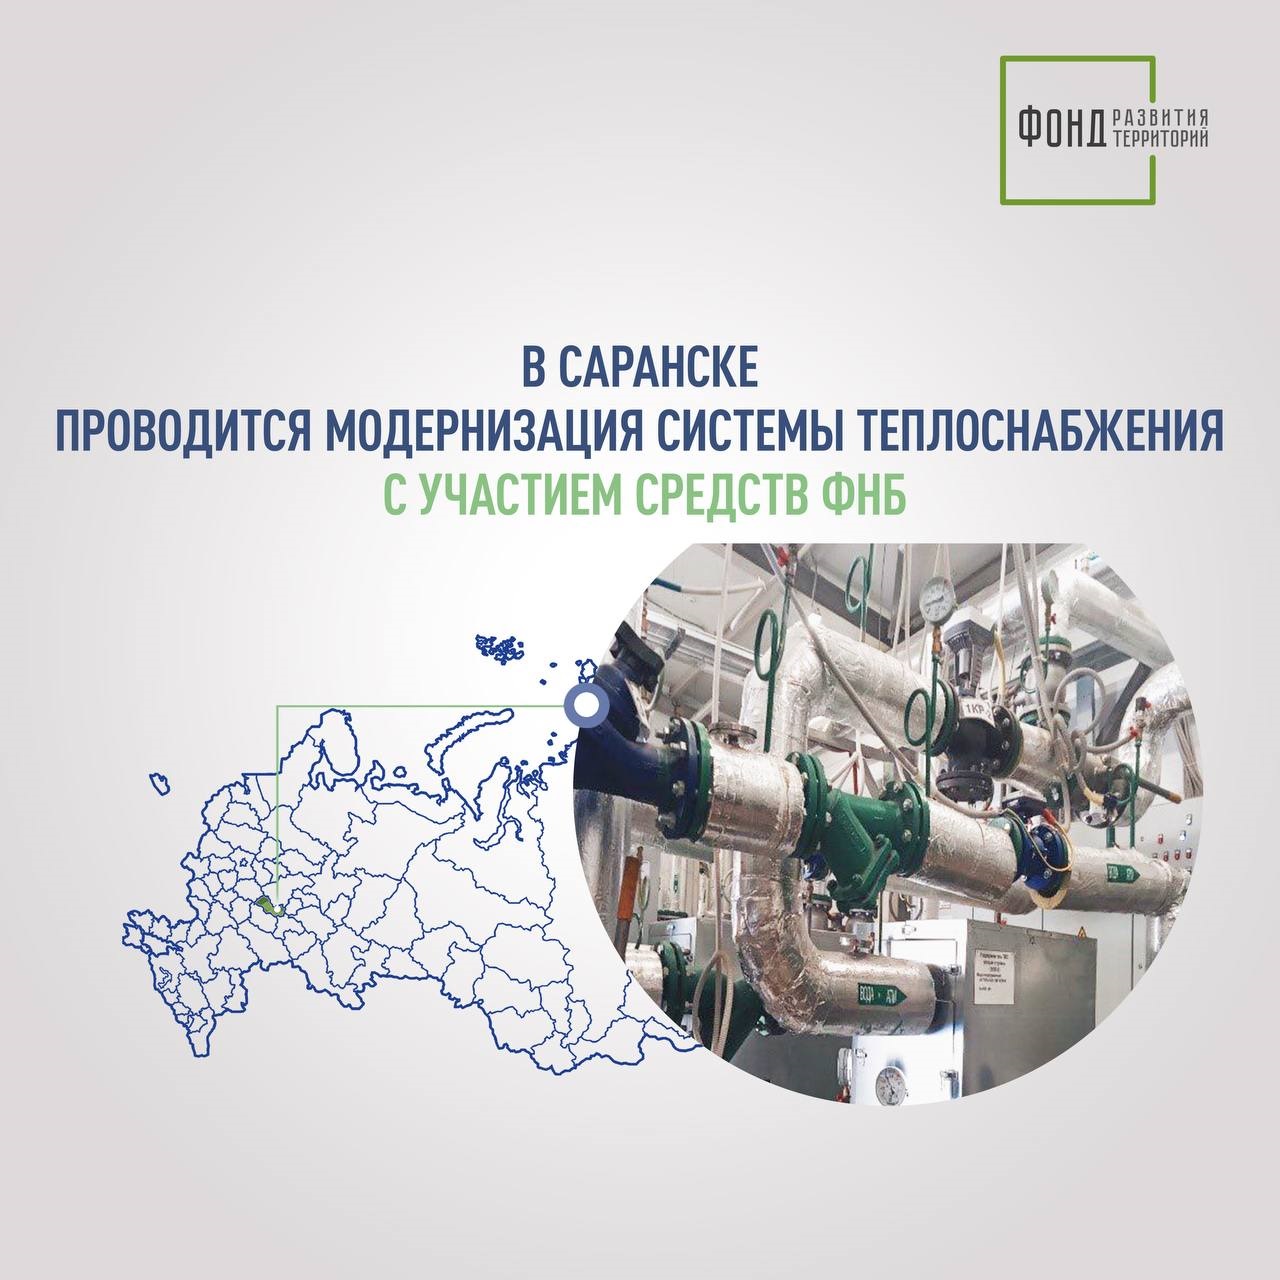 В Саранске проводится модернизация системы теплоснабжения с участием средств ФНБ